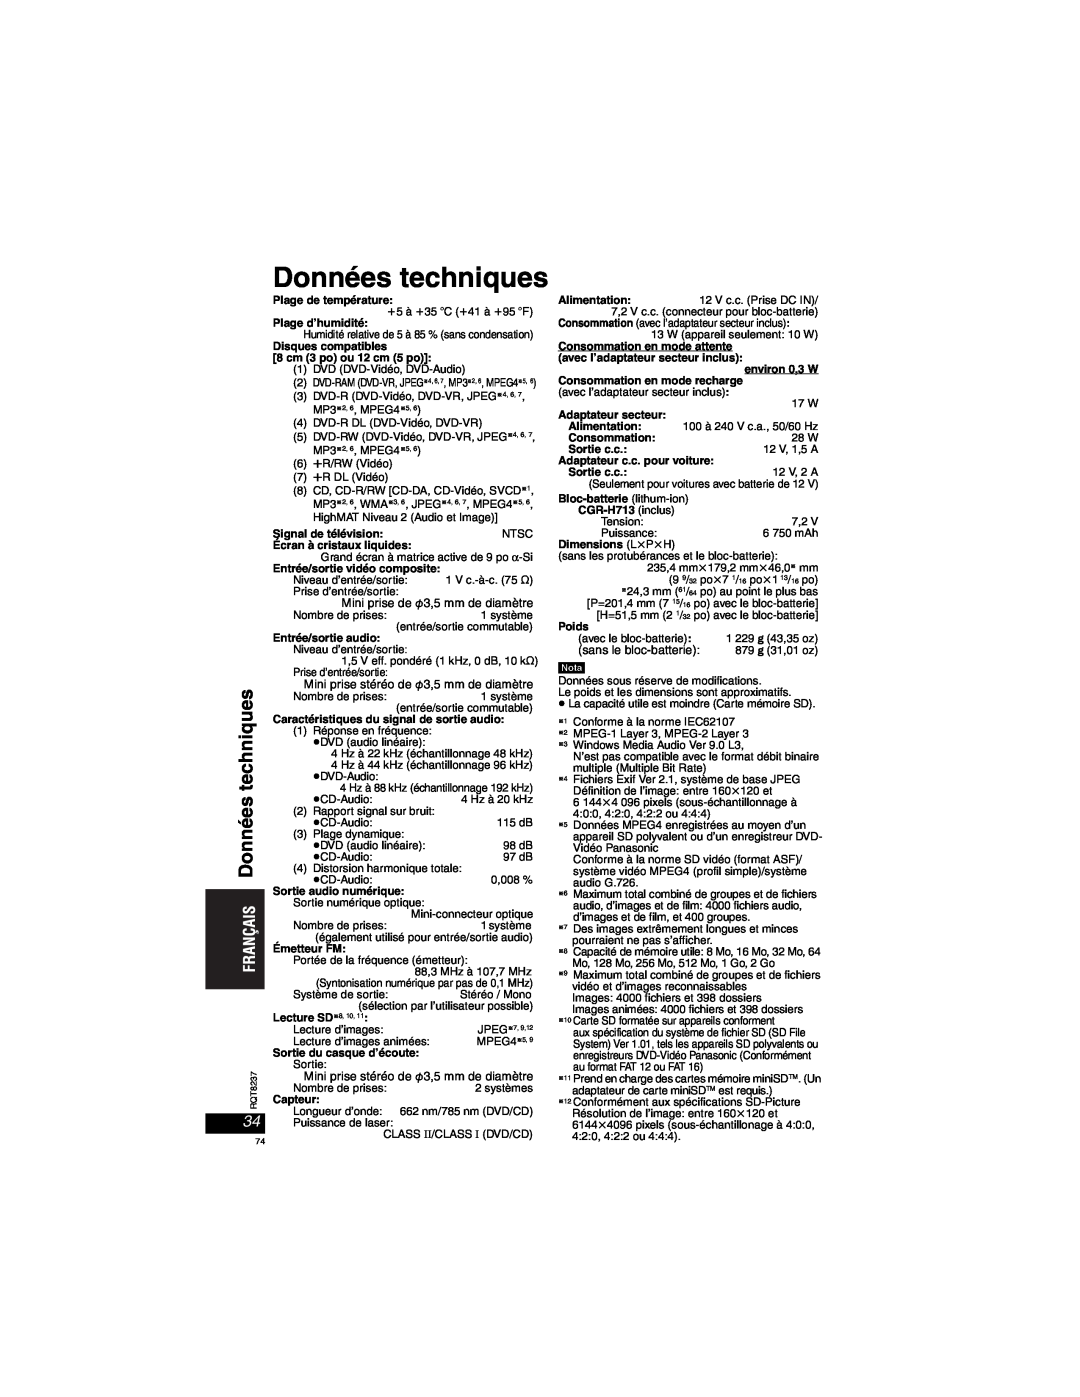 Panasonic DVD-LX97 Données techniques, Plage de température, Plage d’humidité, Disques compatibles 8 cm 3 po ou 12 cm 5 po 